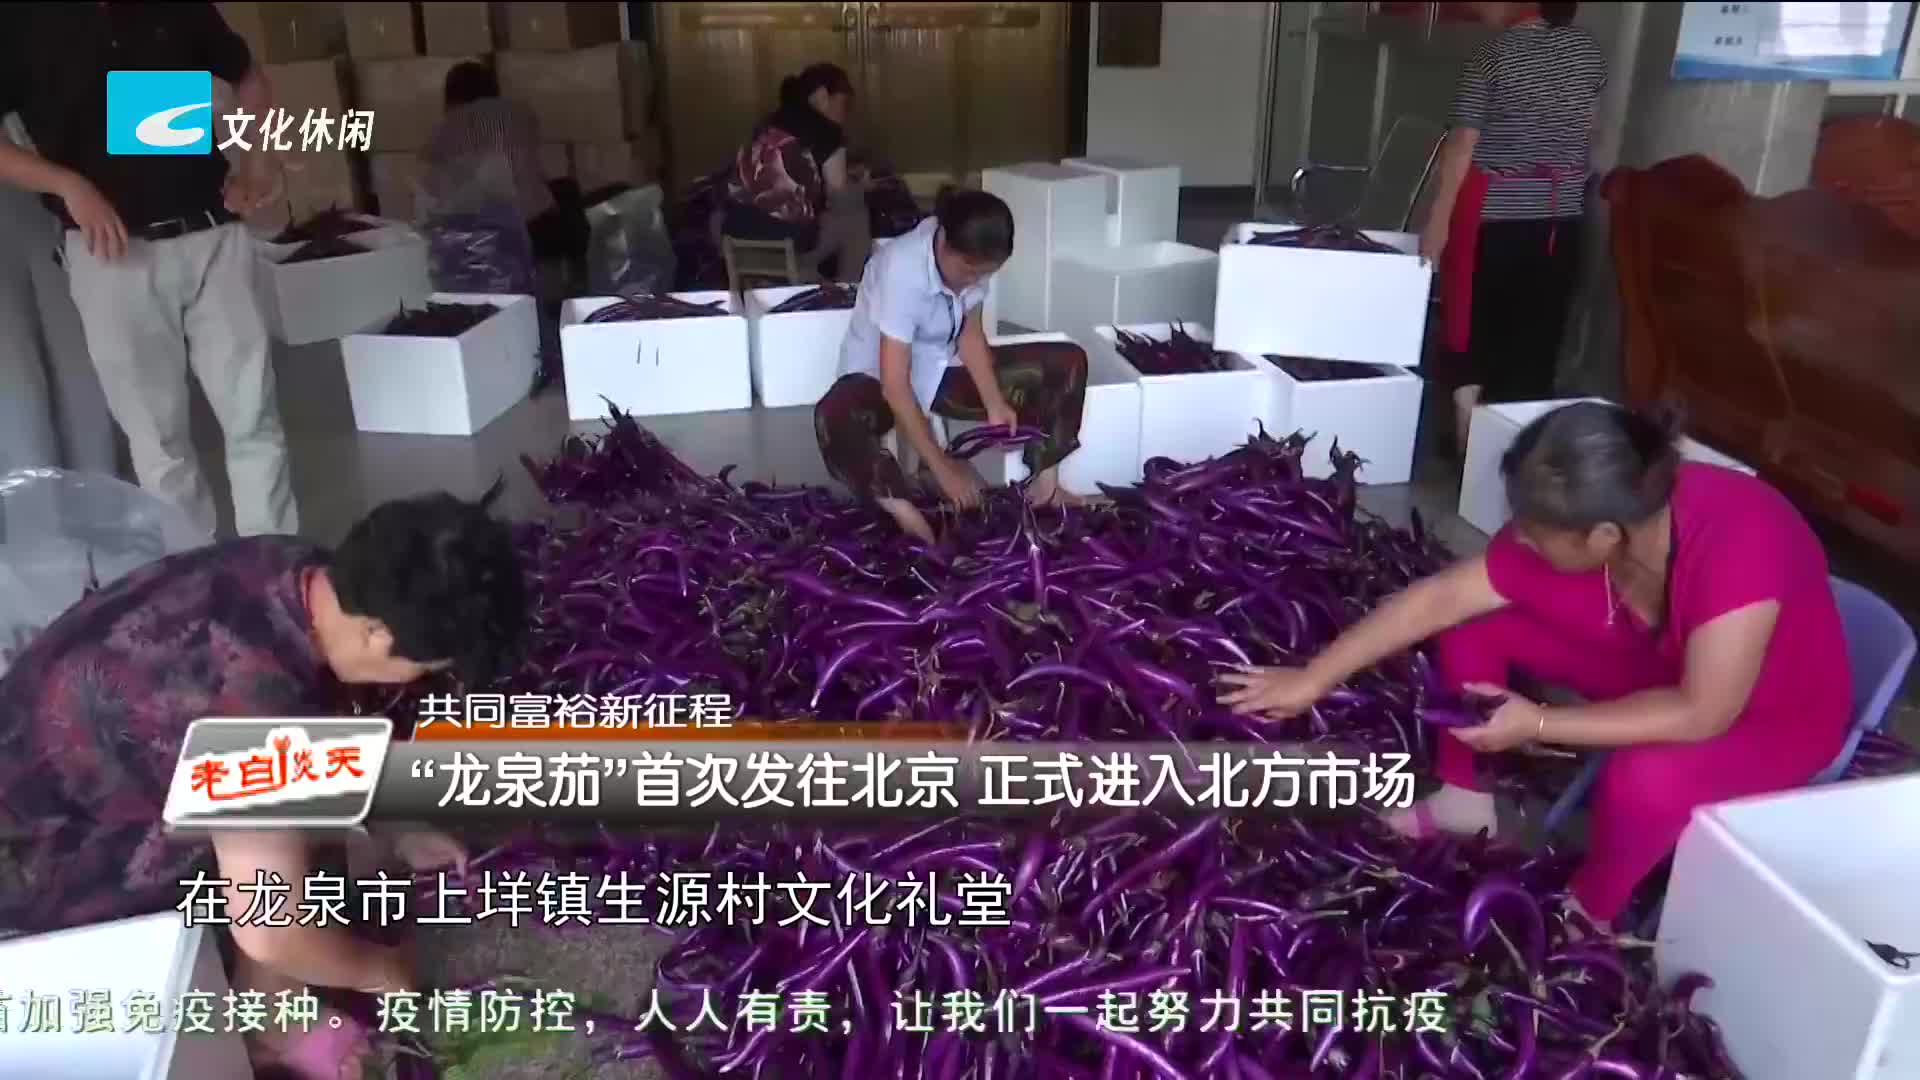 共同富裕新征程：“龙泉茄”首次发往北京 正式进入北方市场